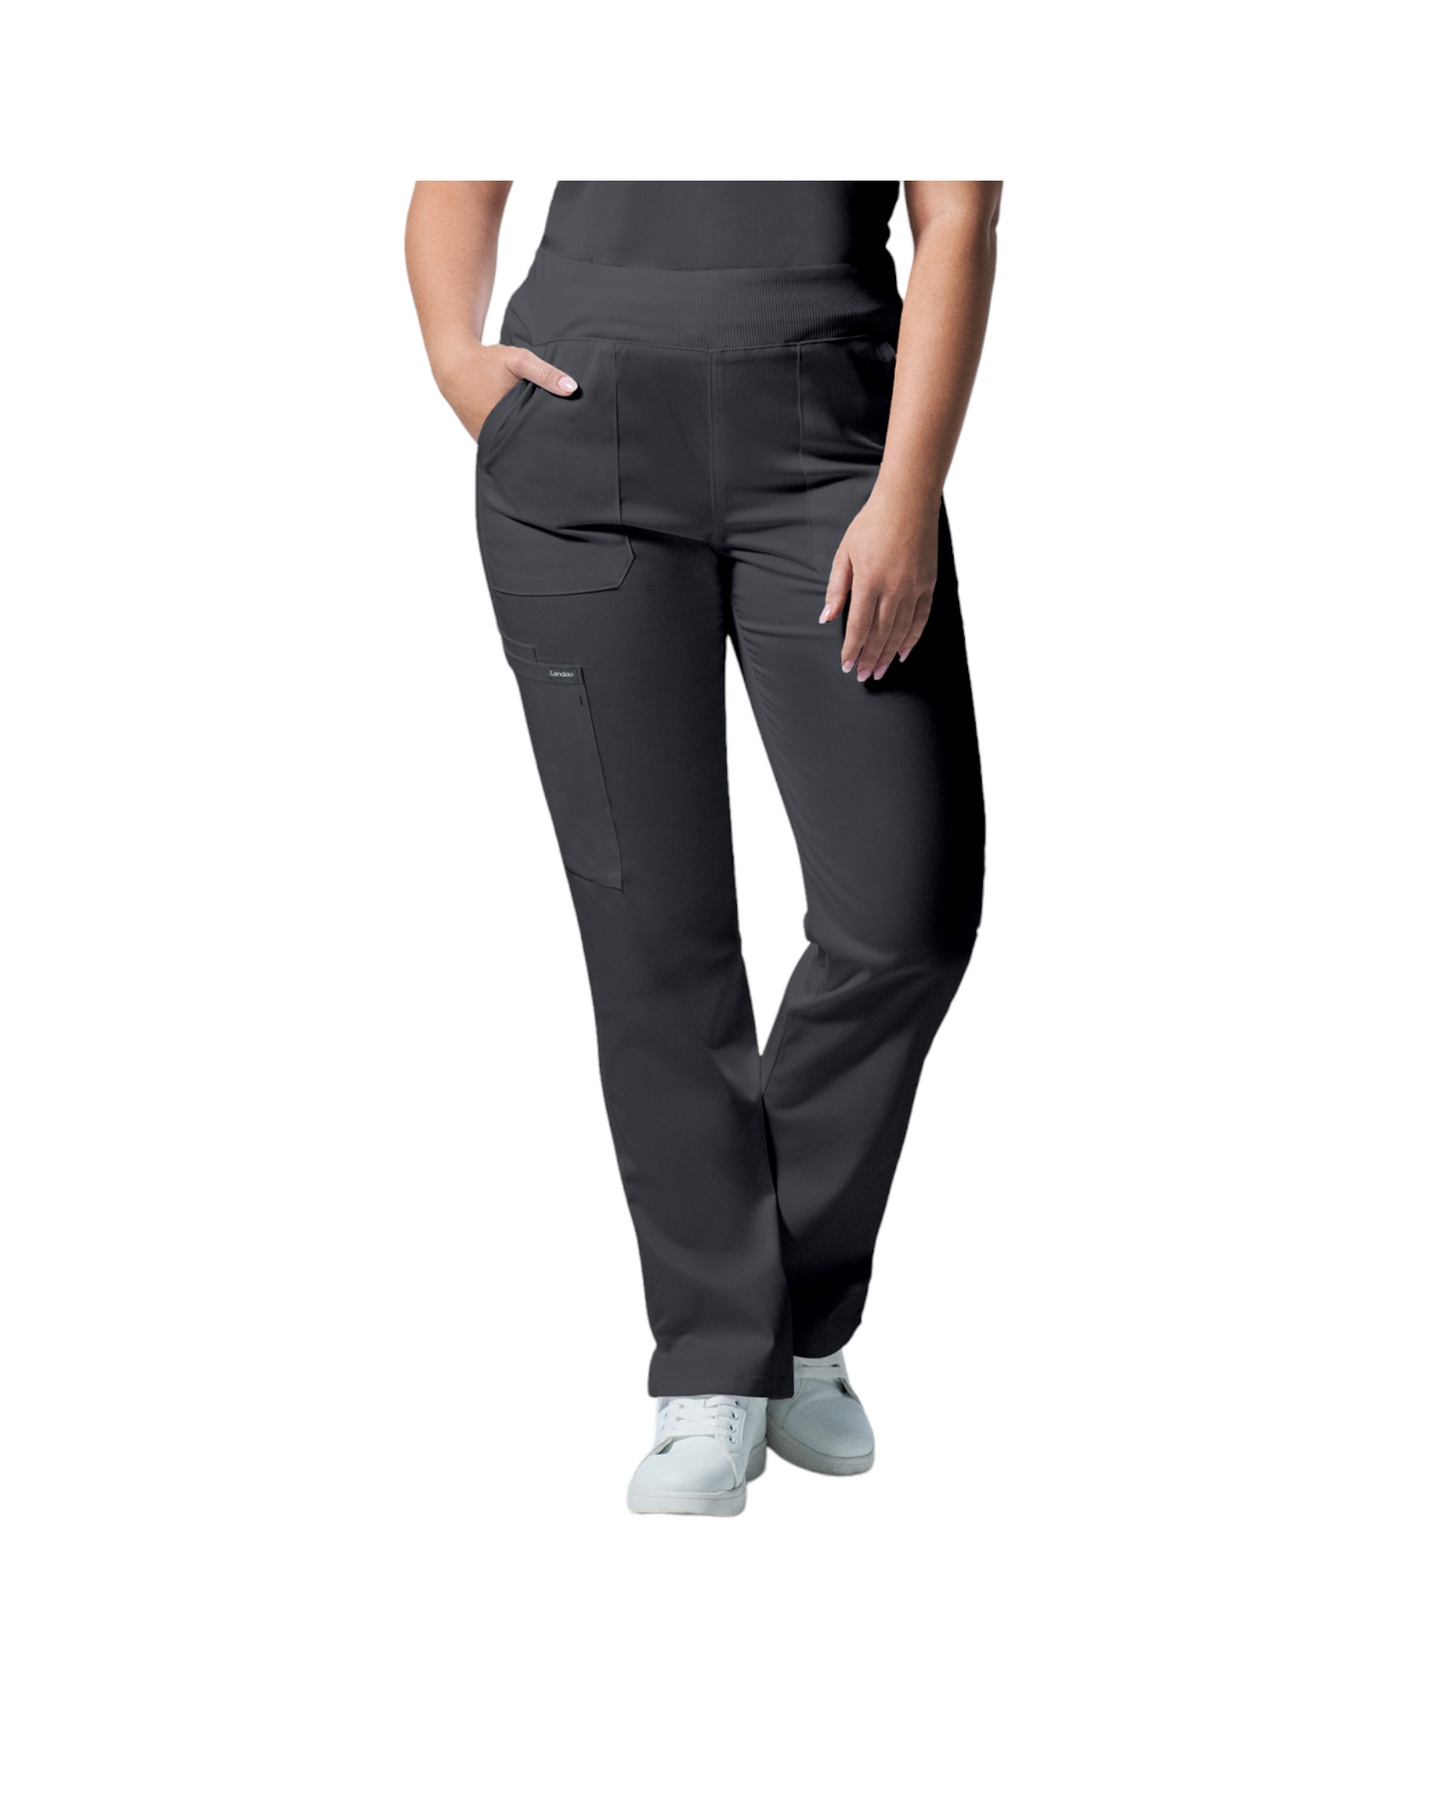 Pantalons 6 poches pour femmes Landau Proflex #LB405 OS couleur Graphite